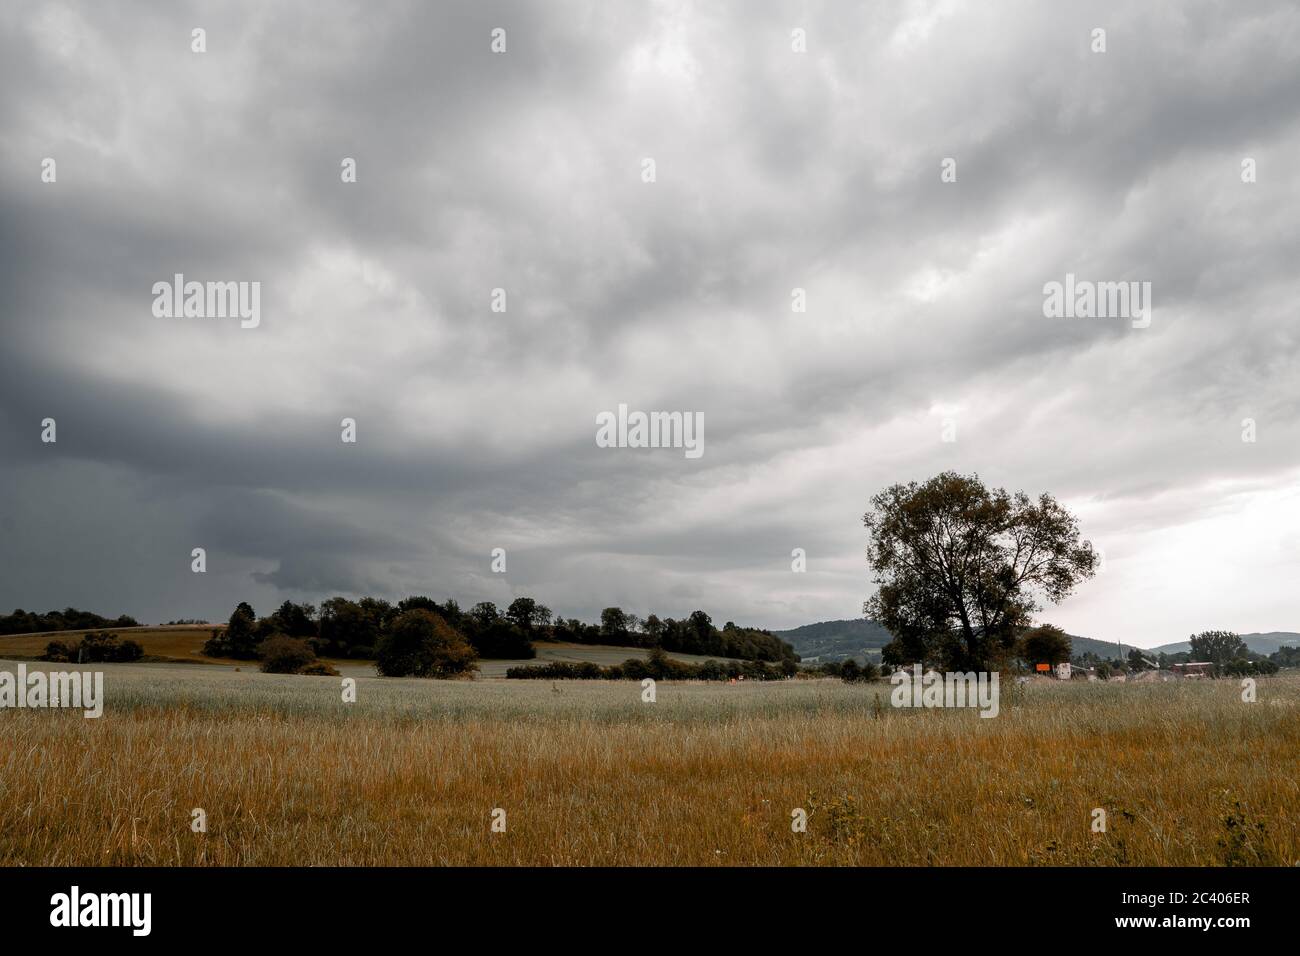 la tormenta viene nubes grises en el cielo con el árbol y el campo Foto de stock